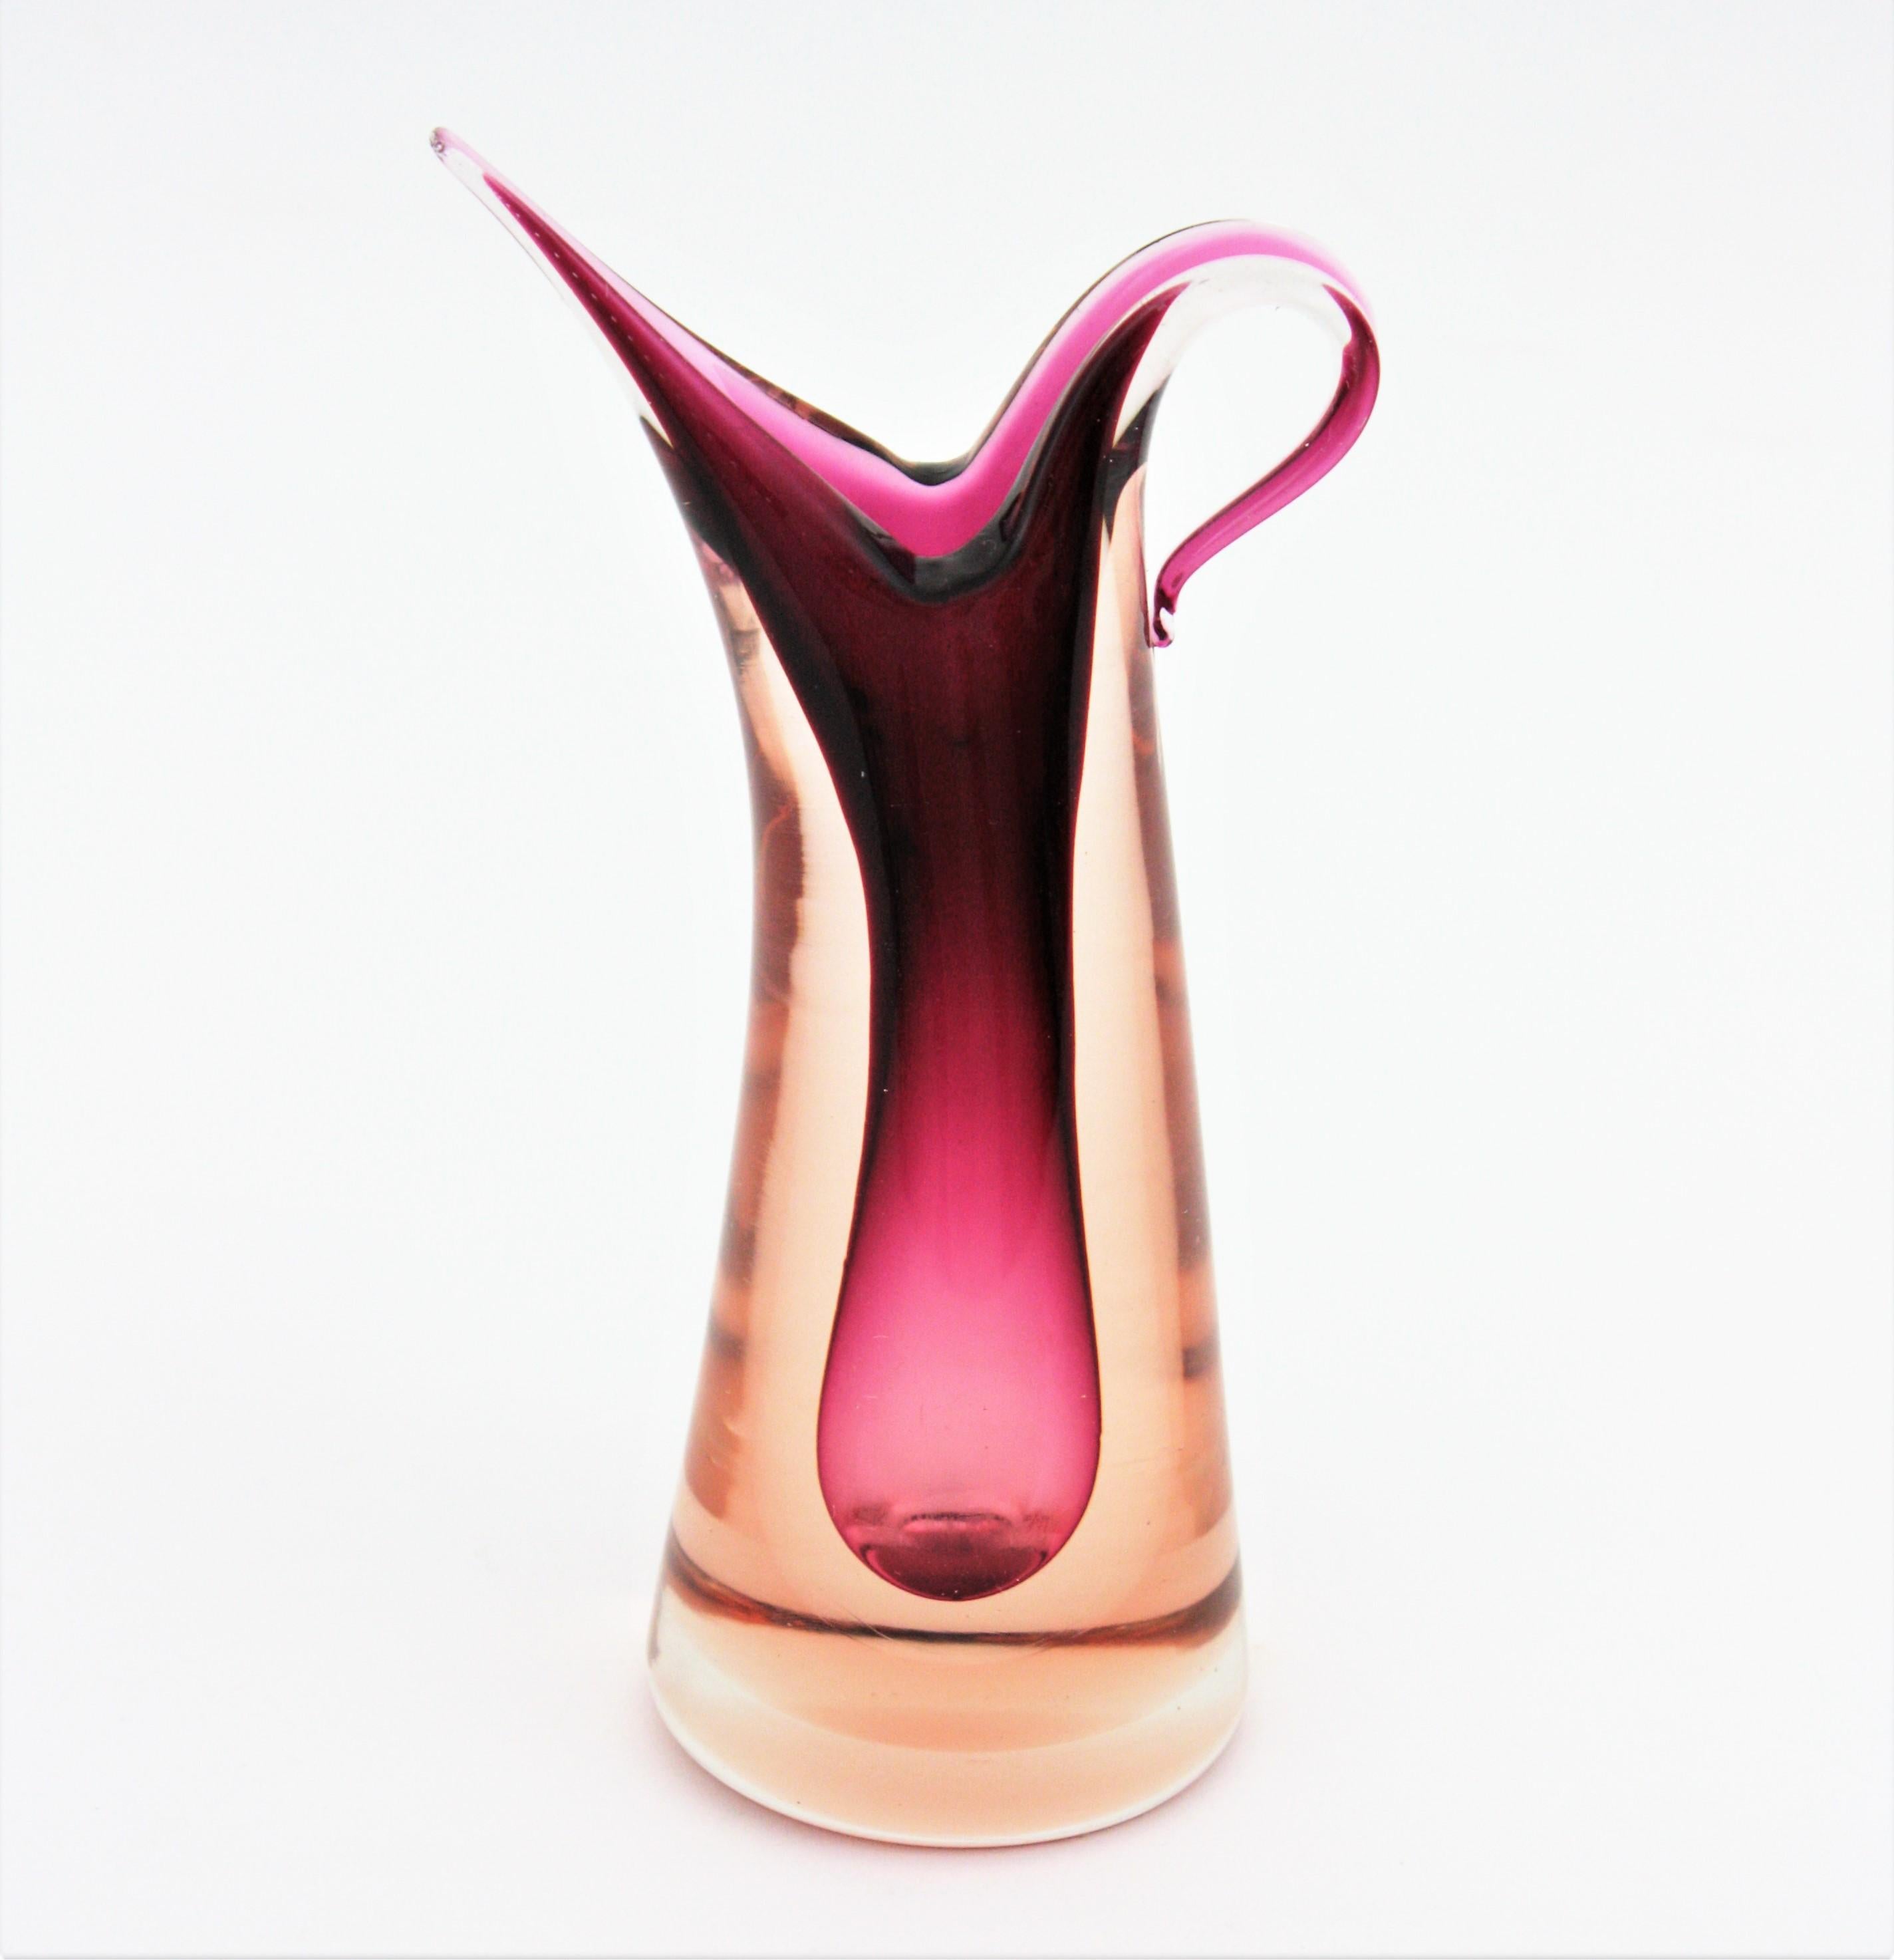 Sommerso Murano Vase in Form eines Kruges in Rosa- und Granattönen. Entworfen von Flavio Poli und hergestellt von Seguso Vetri d'Arte. Italien, 1950er Jahre.
Erstaunliche Krugform und auffällige Farben.
Wunderbar als Blumenvase oder dekorative